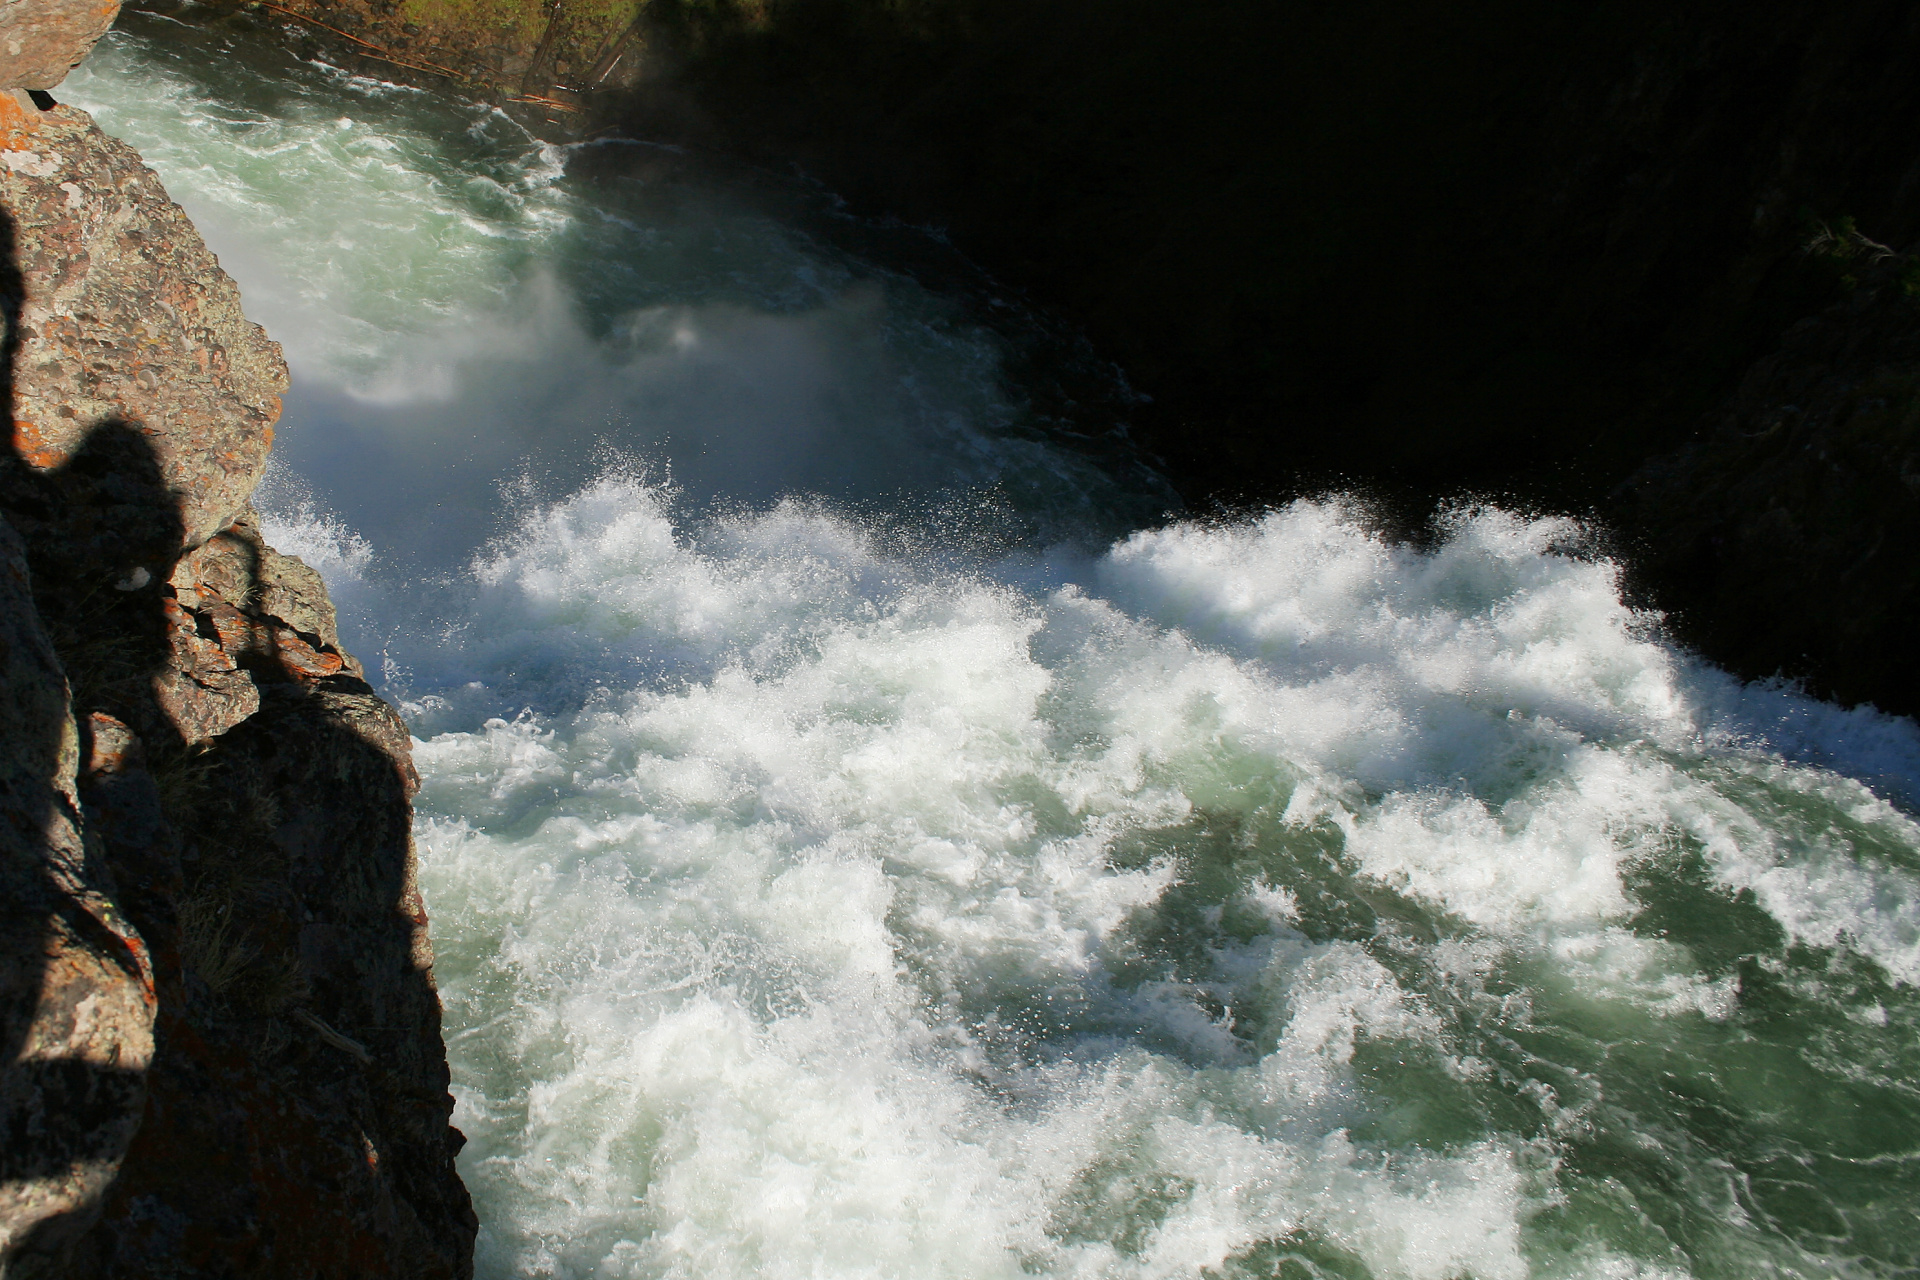 Upper Falls (Podróże » USA: Na ziemi Czejenów » Wielka Podróż » Park Narodowy Yellowstone » Wodospady)